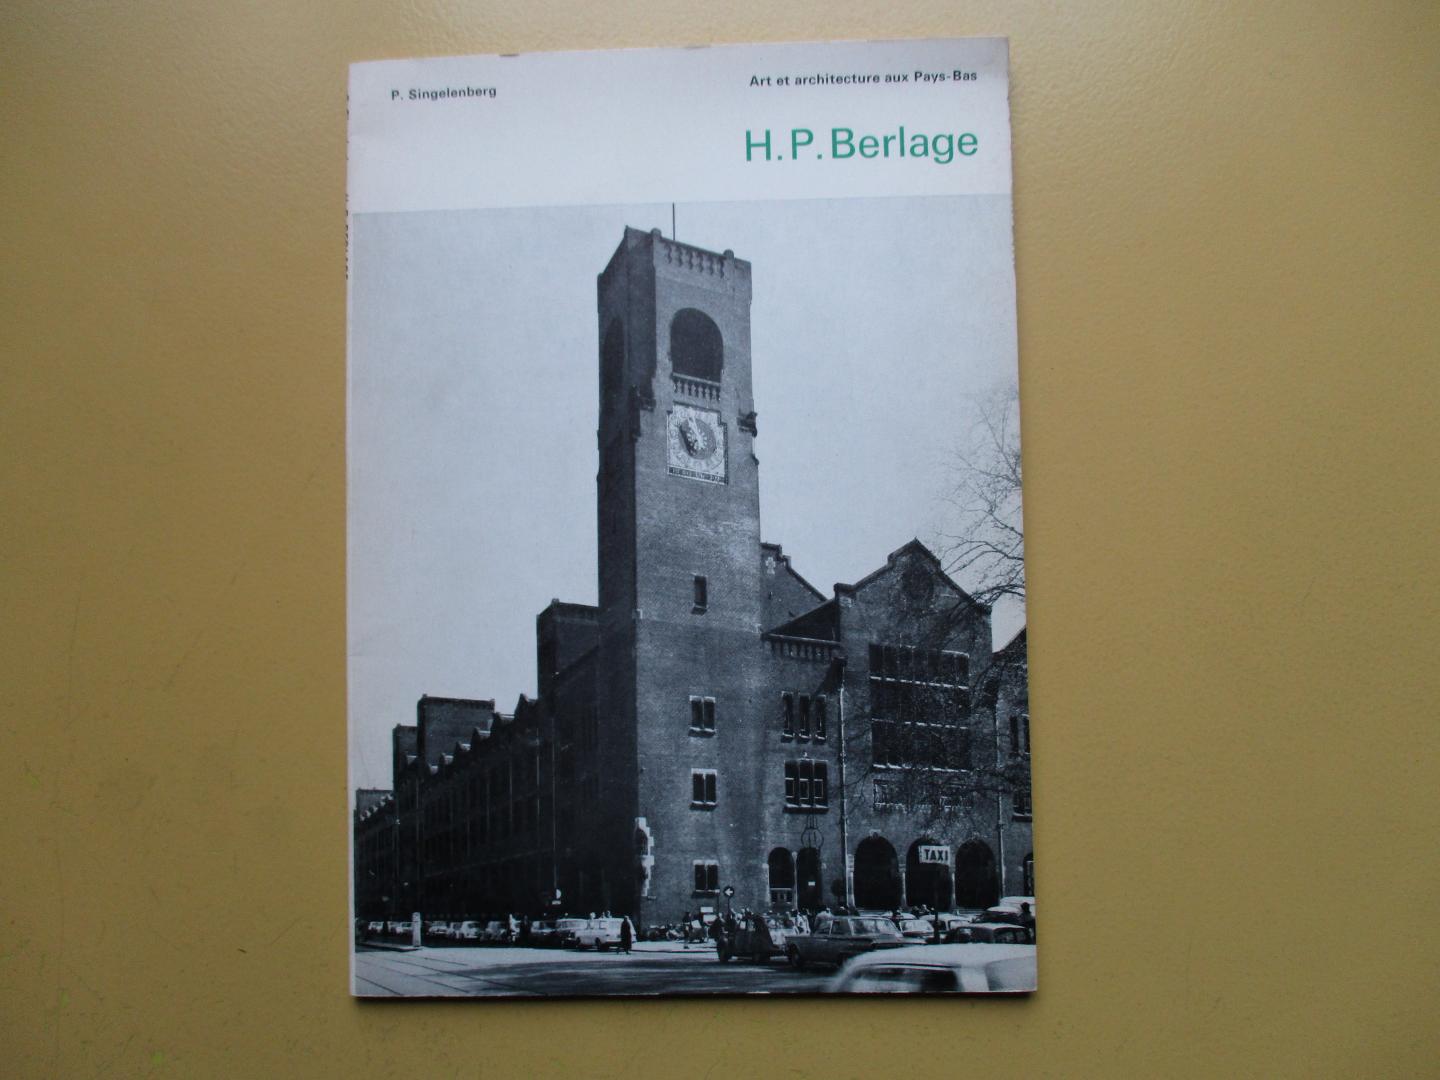 Singelenberg, P. - Art et architecture aux Pays-Bas   H. P. Berlage.